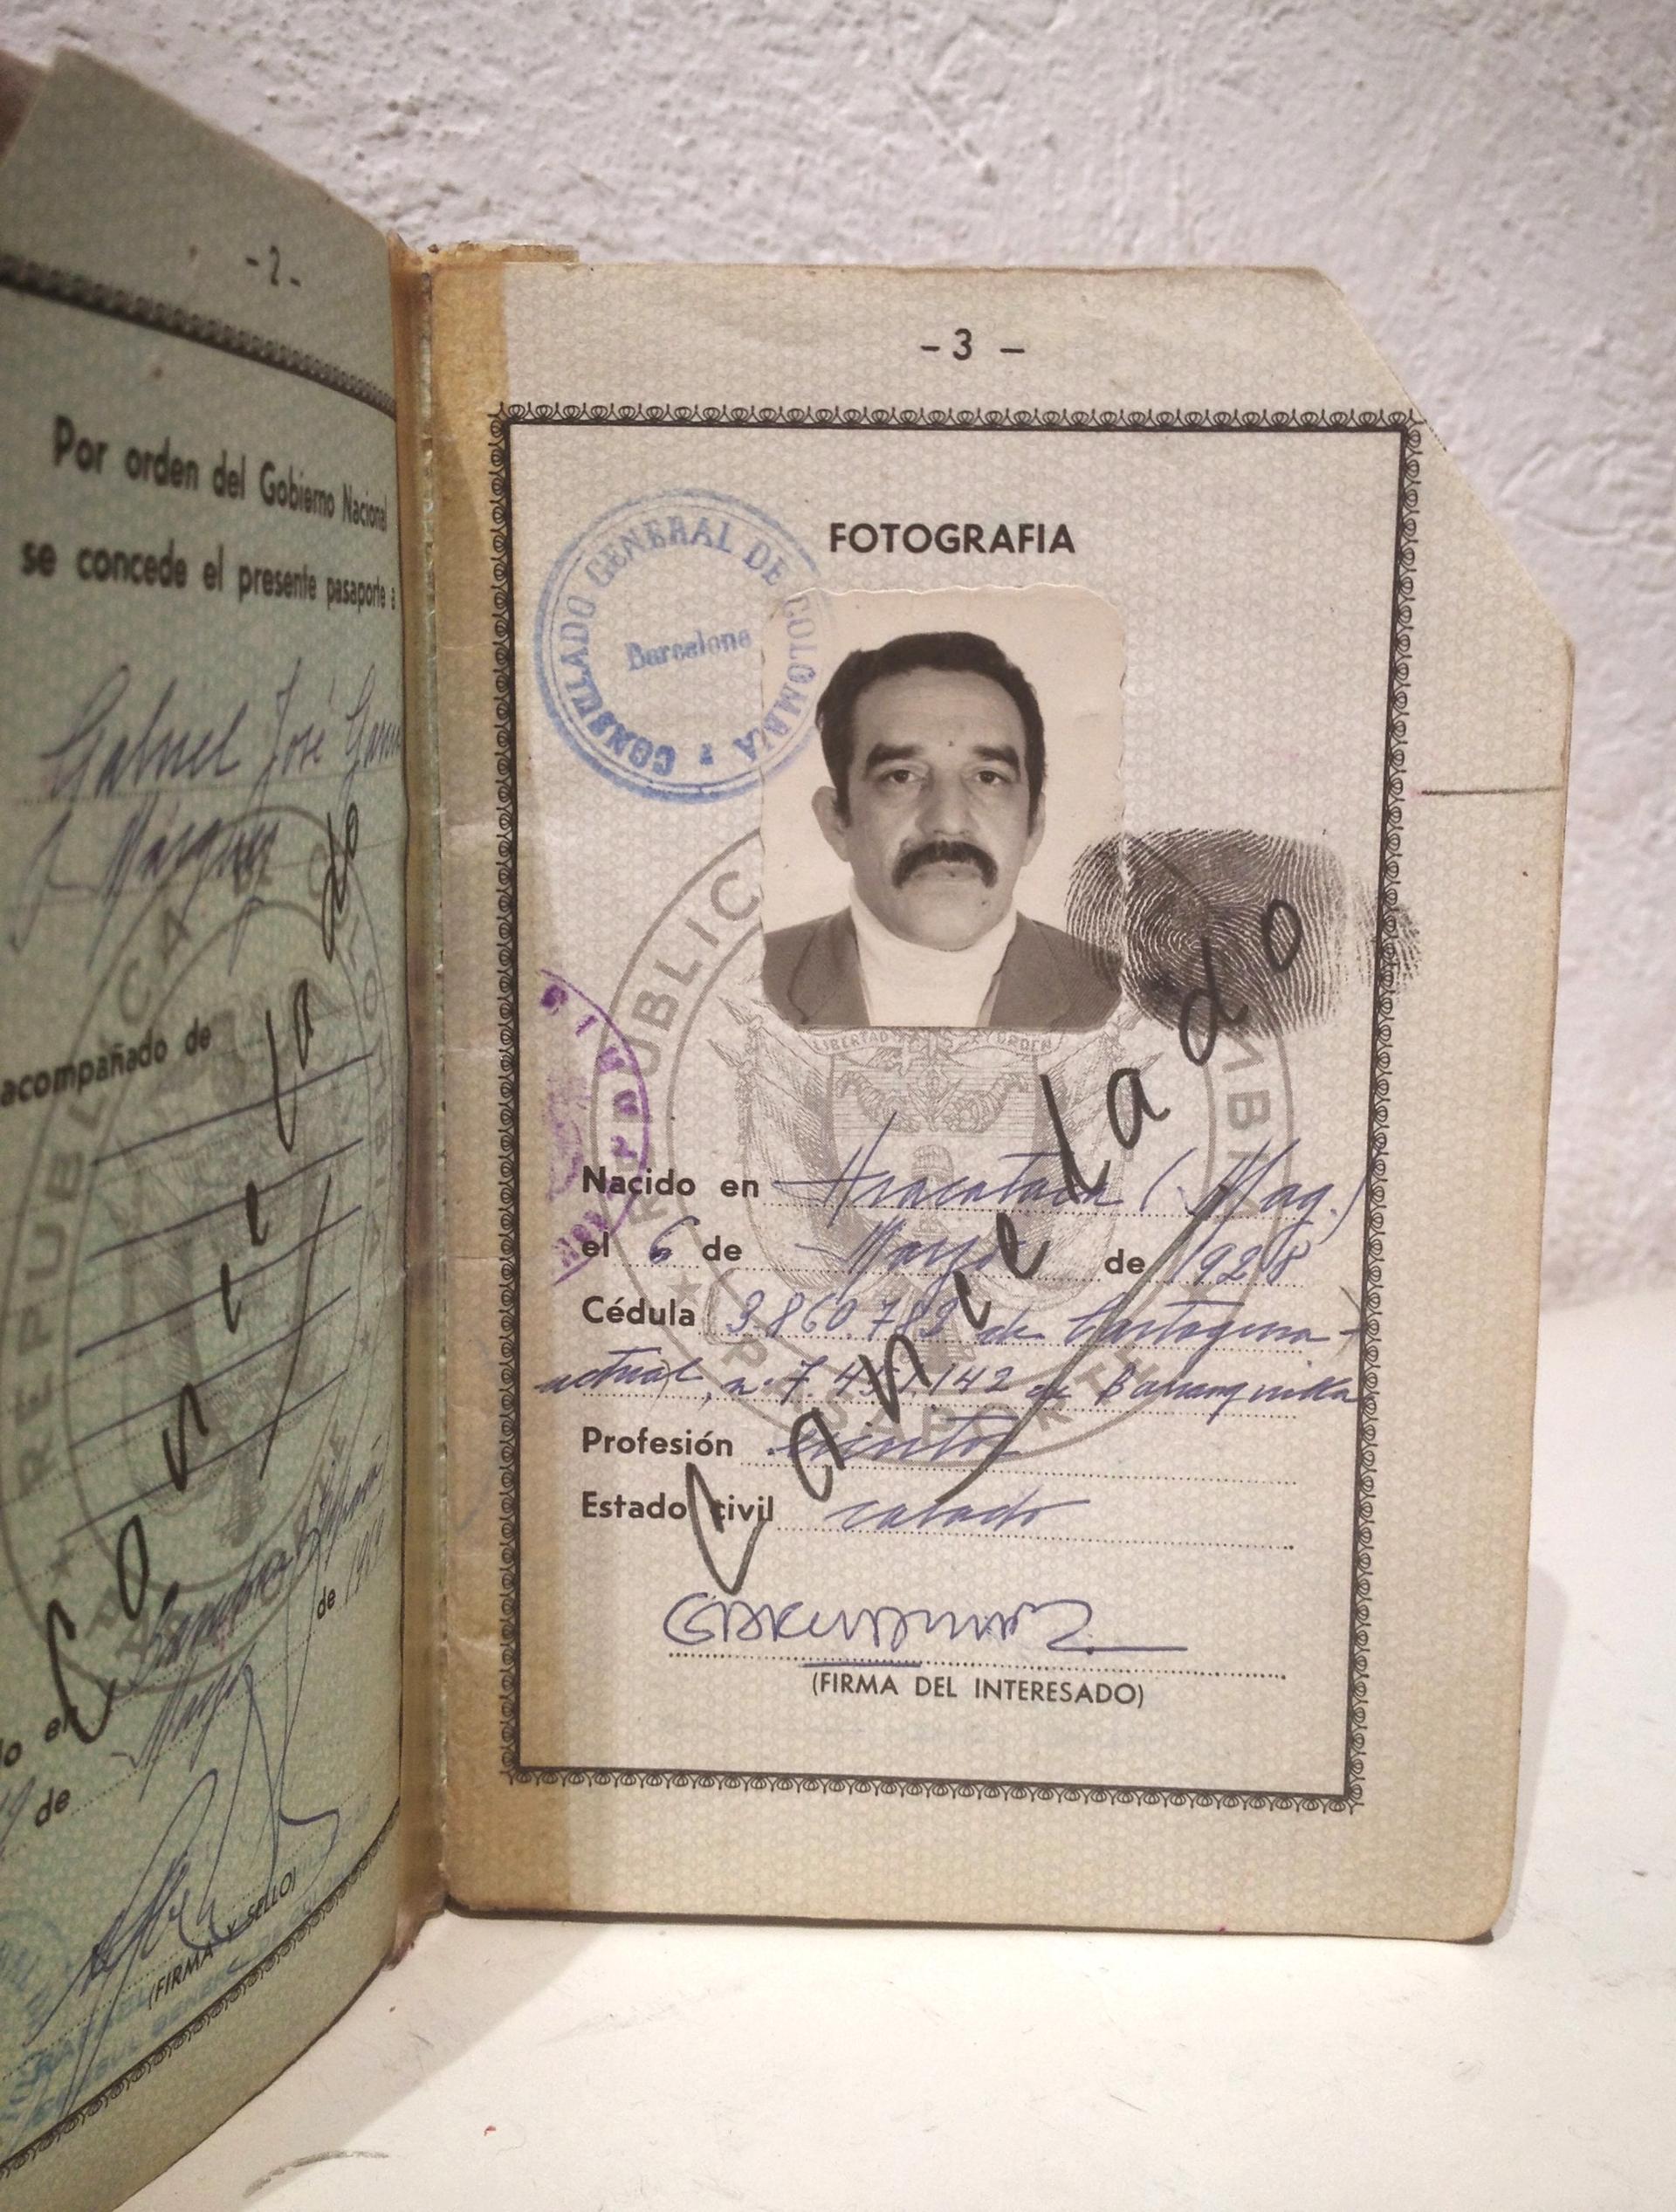 One of Gabriel García Márquez's passports.